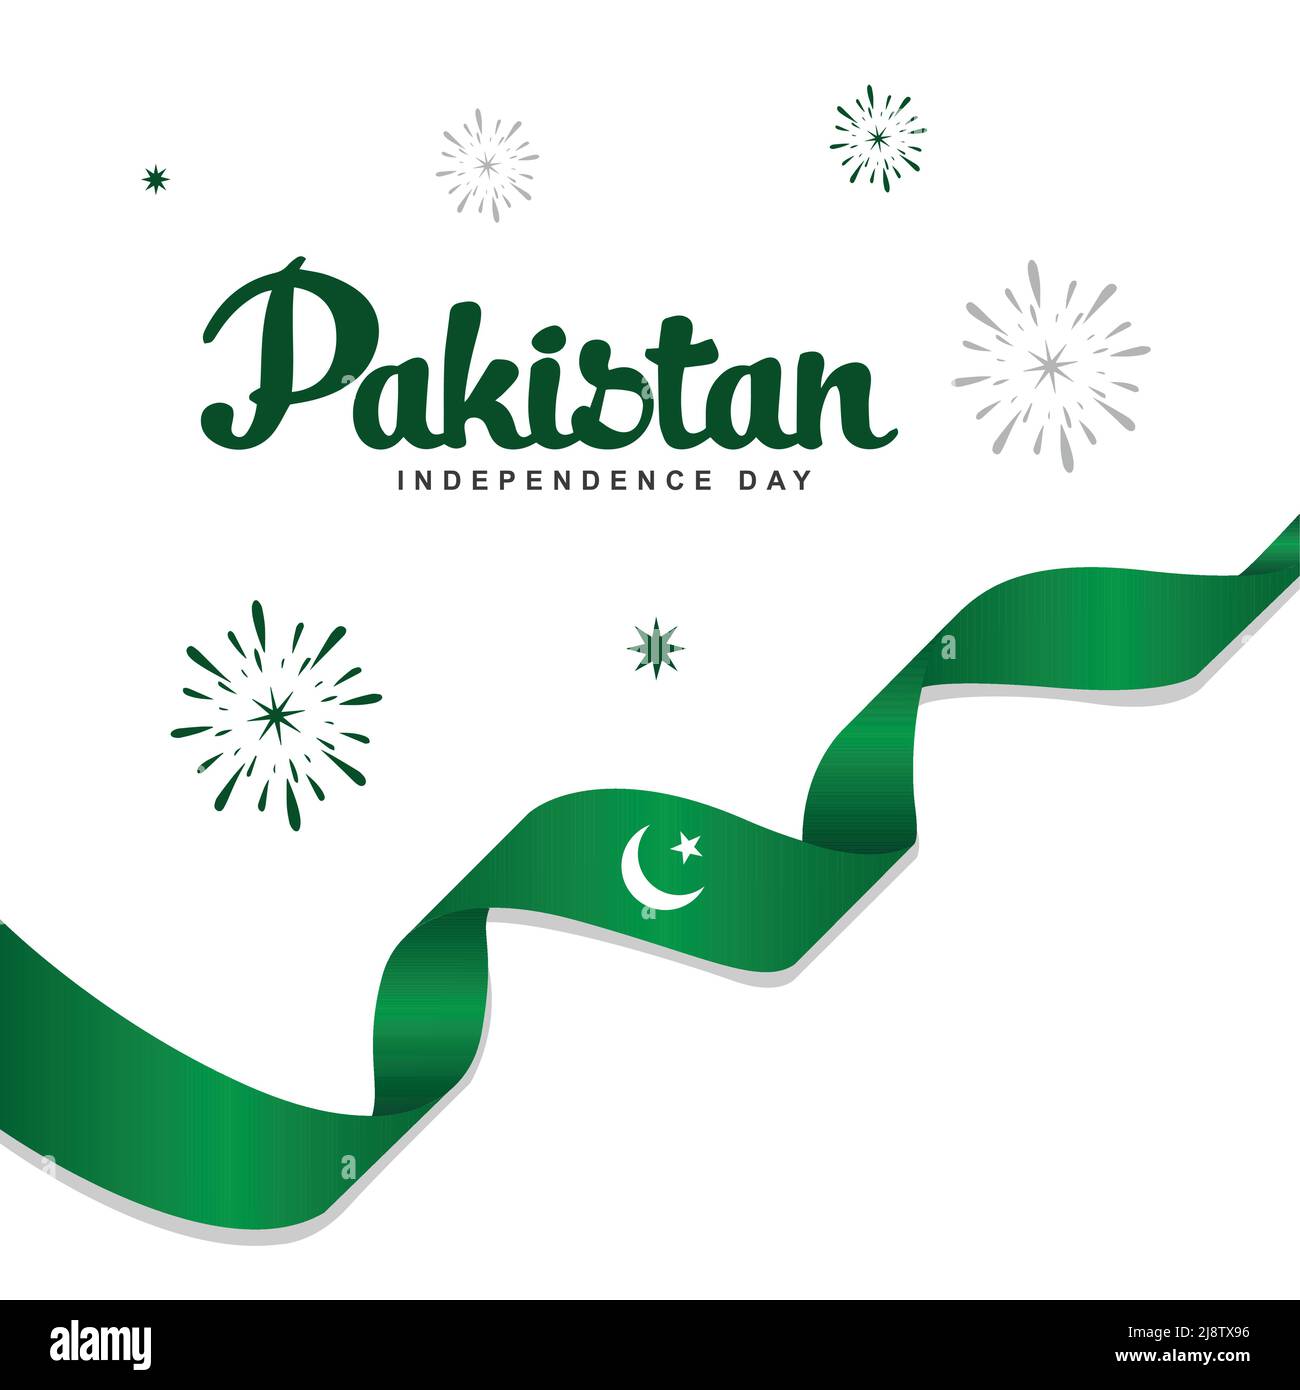 14th août. Carte de voeux pour le Pakistan Happy Independence Day. Drapeau pakistanais et ruban isolés sur fond blanc. Fond Vector Illustration de Vecteur